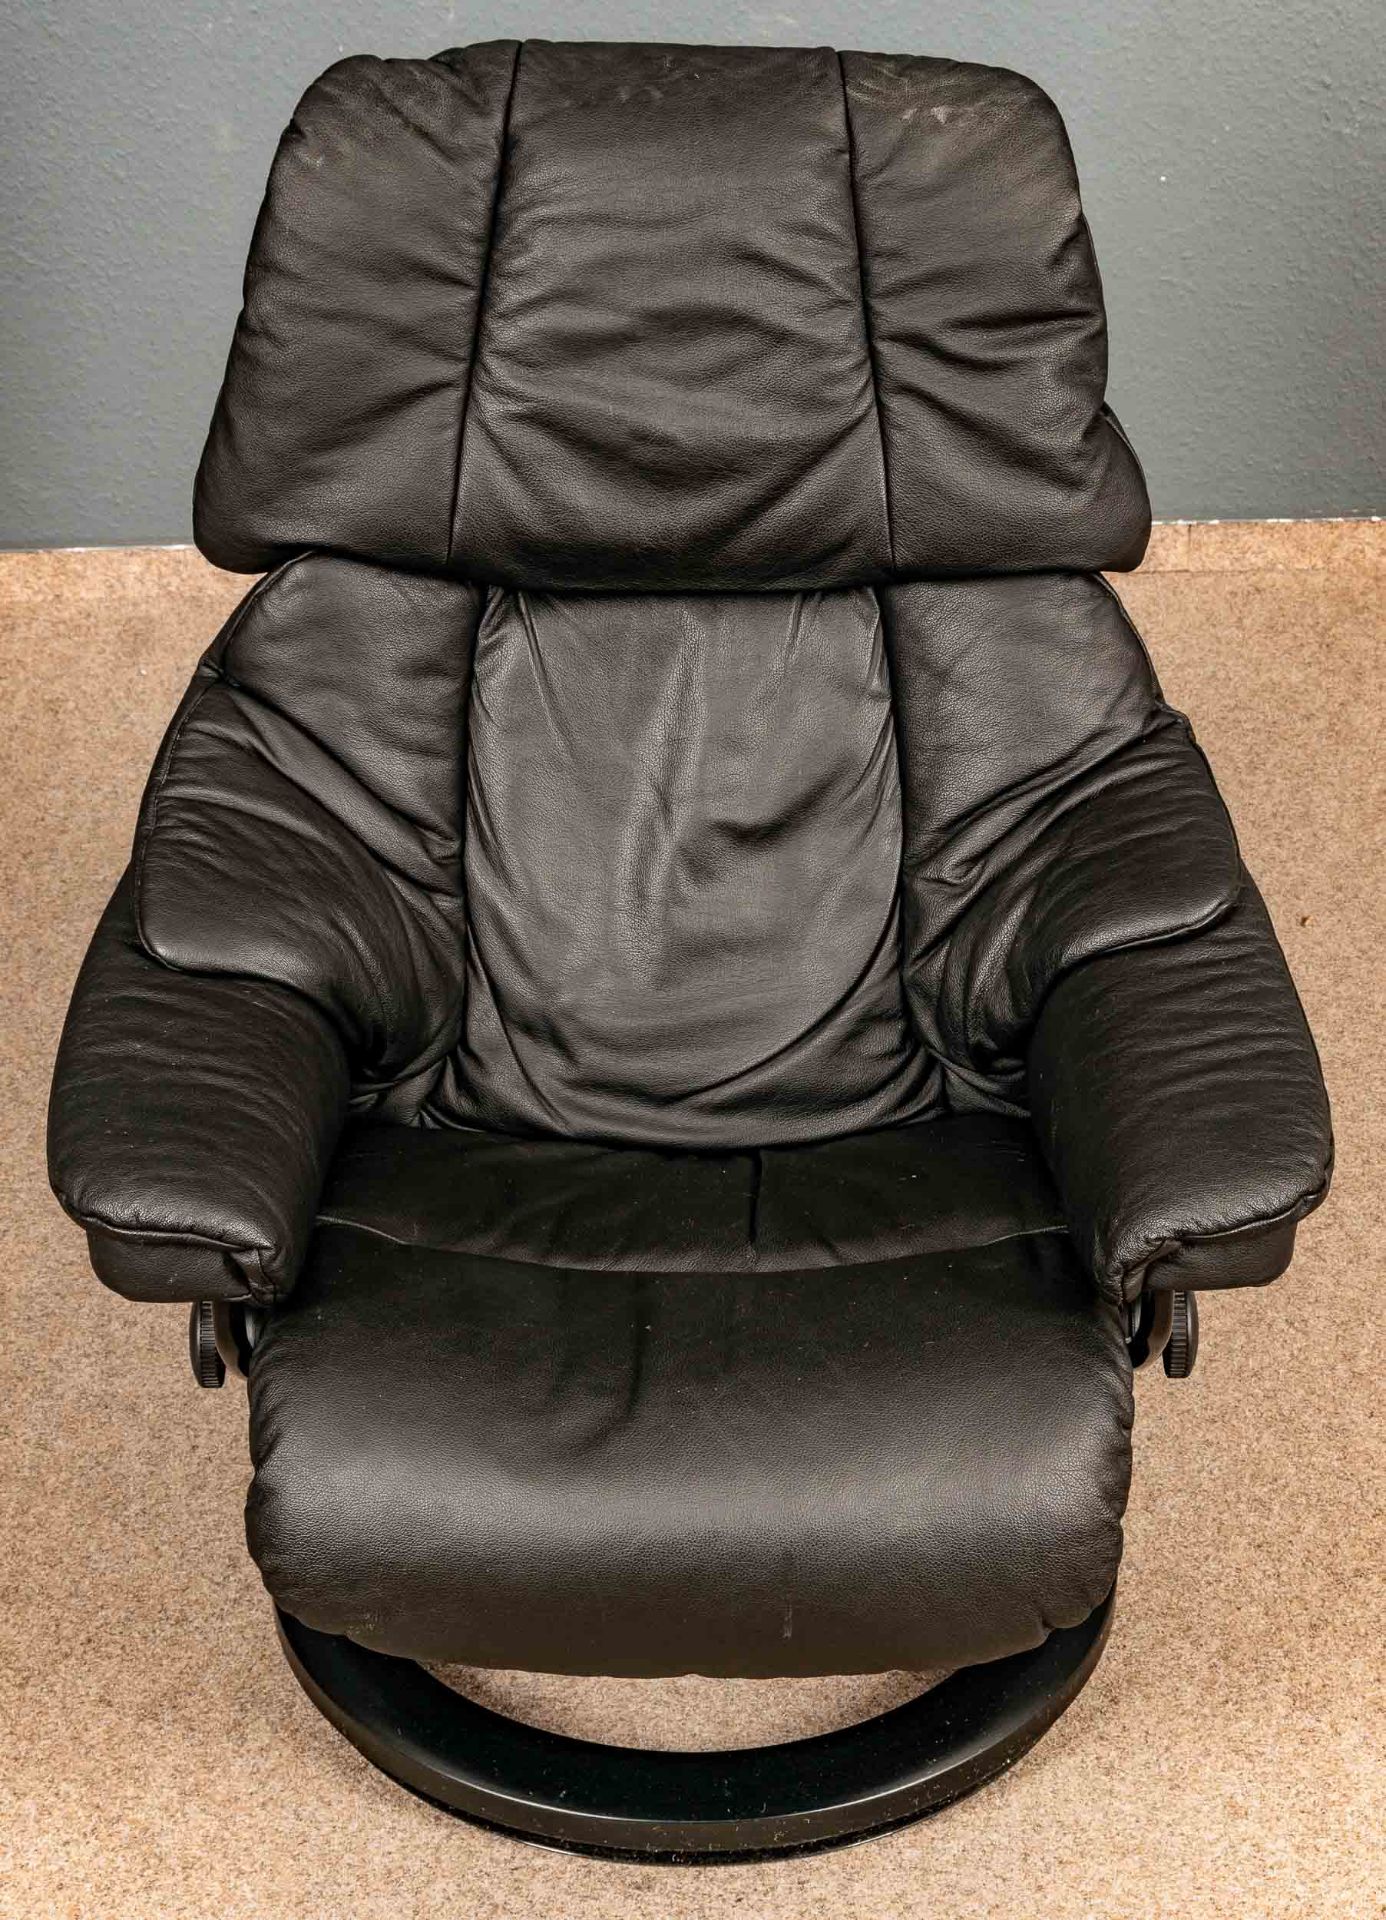 "STRESSLESS" - Sessel mit passendem Hocker, schöner gebrauchter Erhalt. Schwarzes Leder. - Bild 3 aus 8